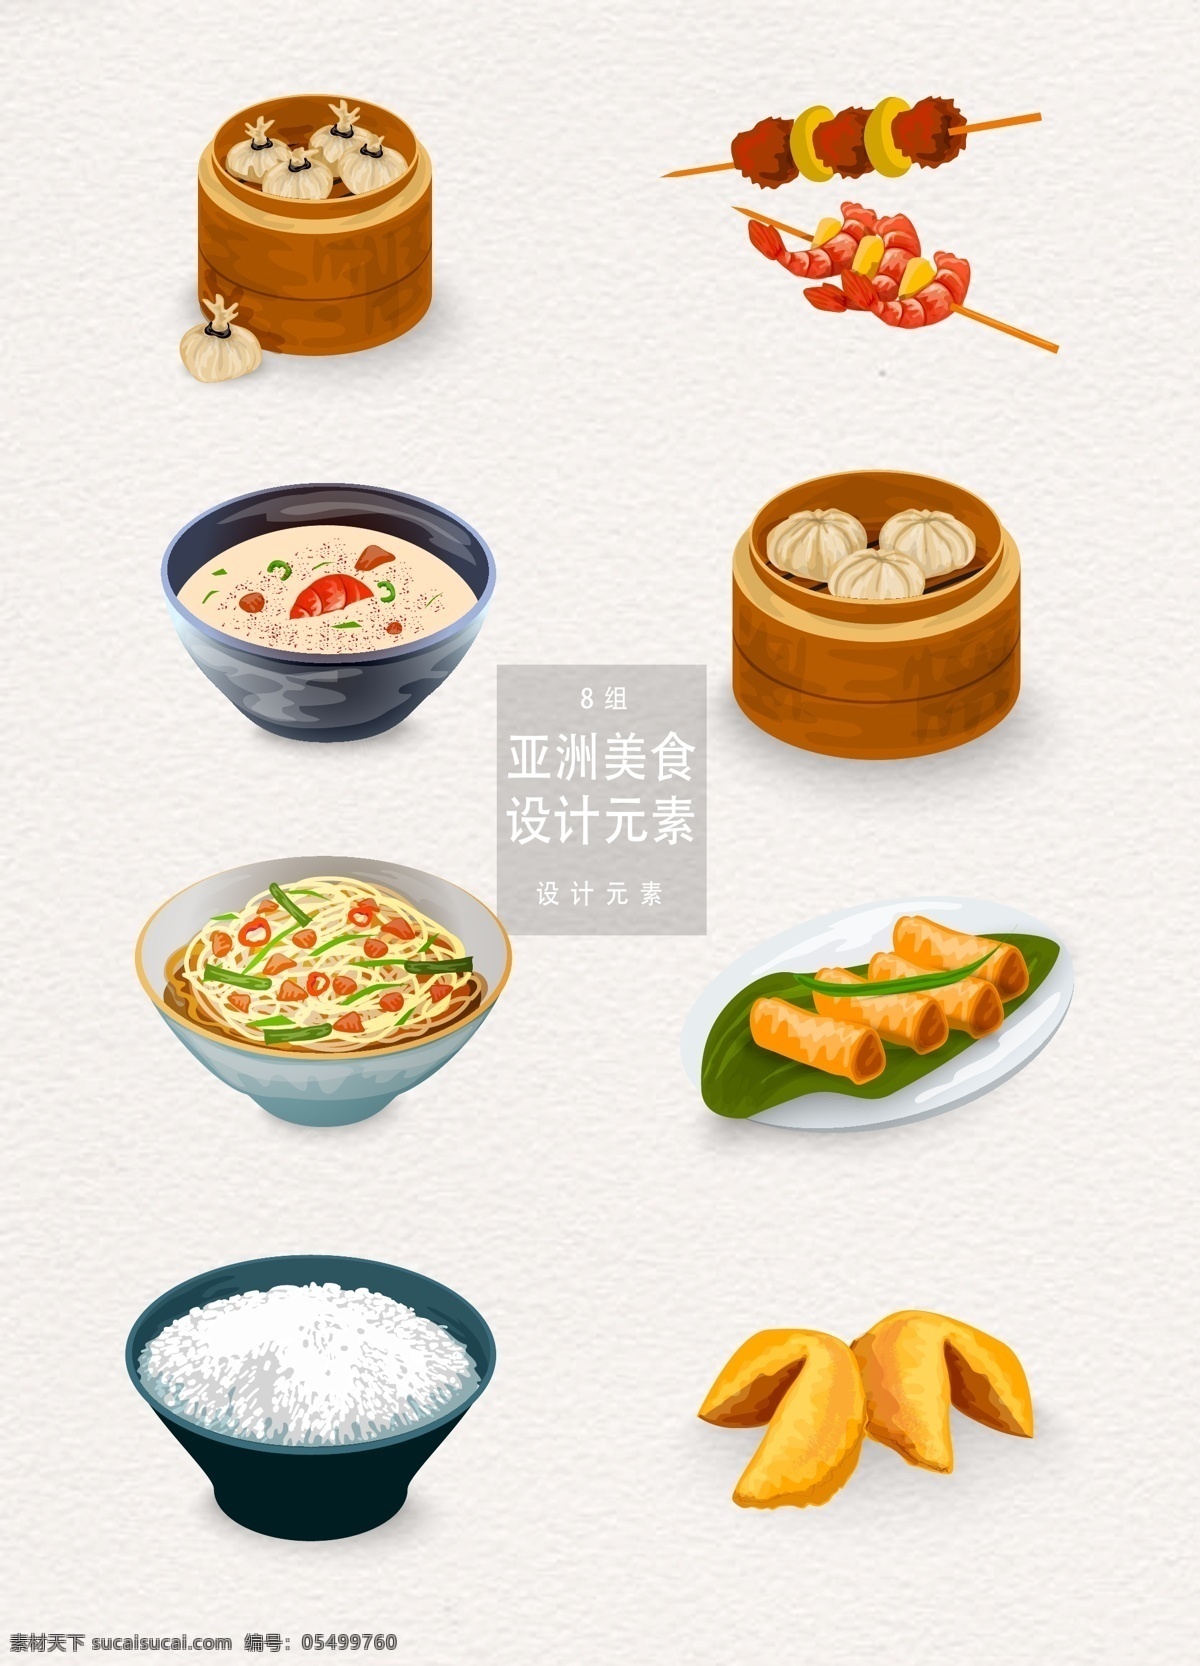 亚洲 中国 食物 美食 元素 设计元素 包子 面条 米饭 饺子 中国食物 亚洲美食 美食插画 小笼包 蒸笼 春卷